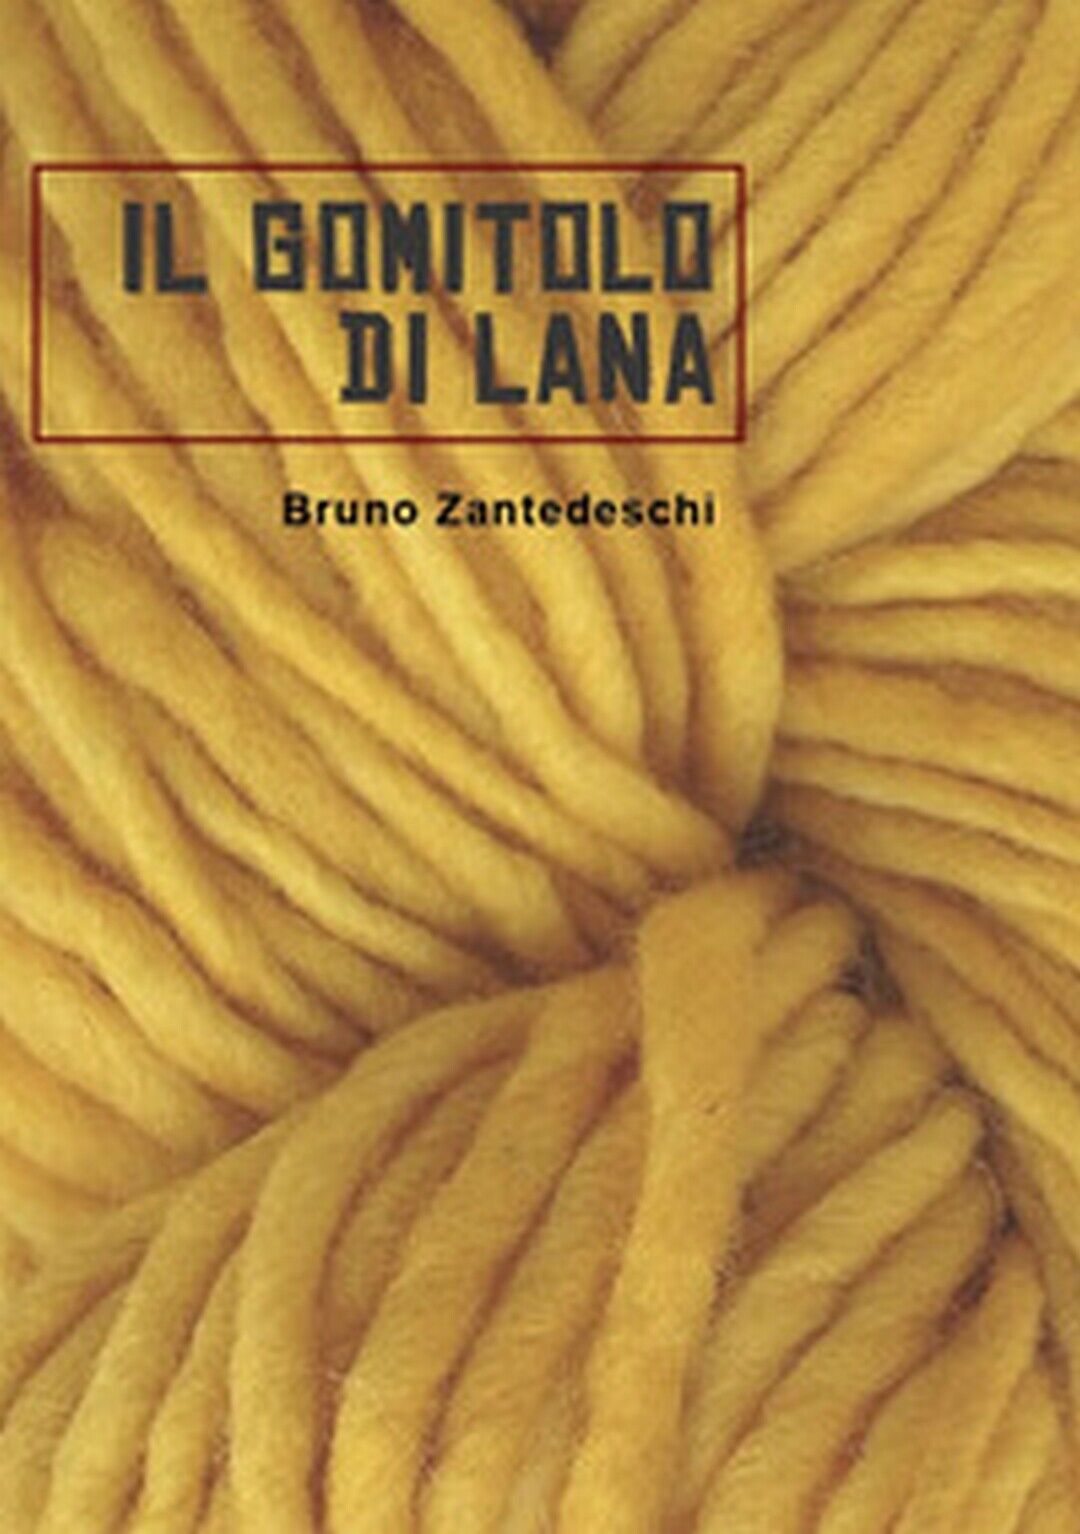 Il gomitolo di lana  di Bruno Zantedeschi,  2017,  Universitas Studiorum